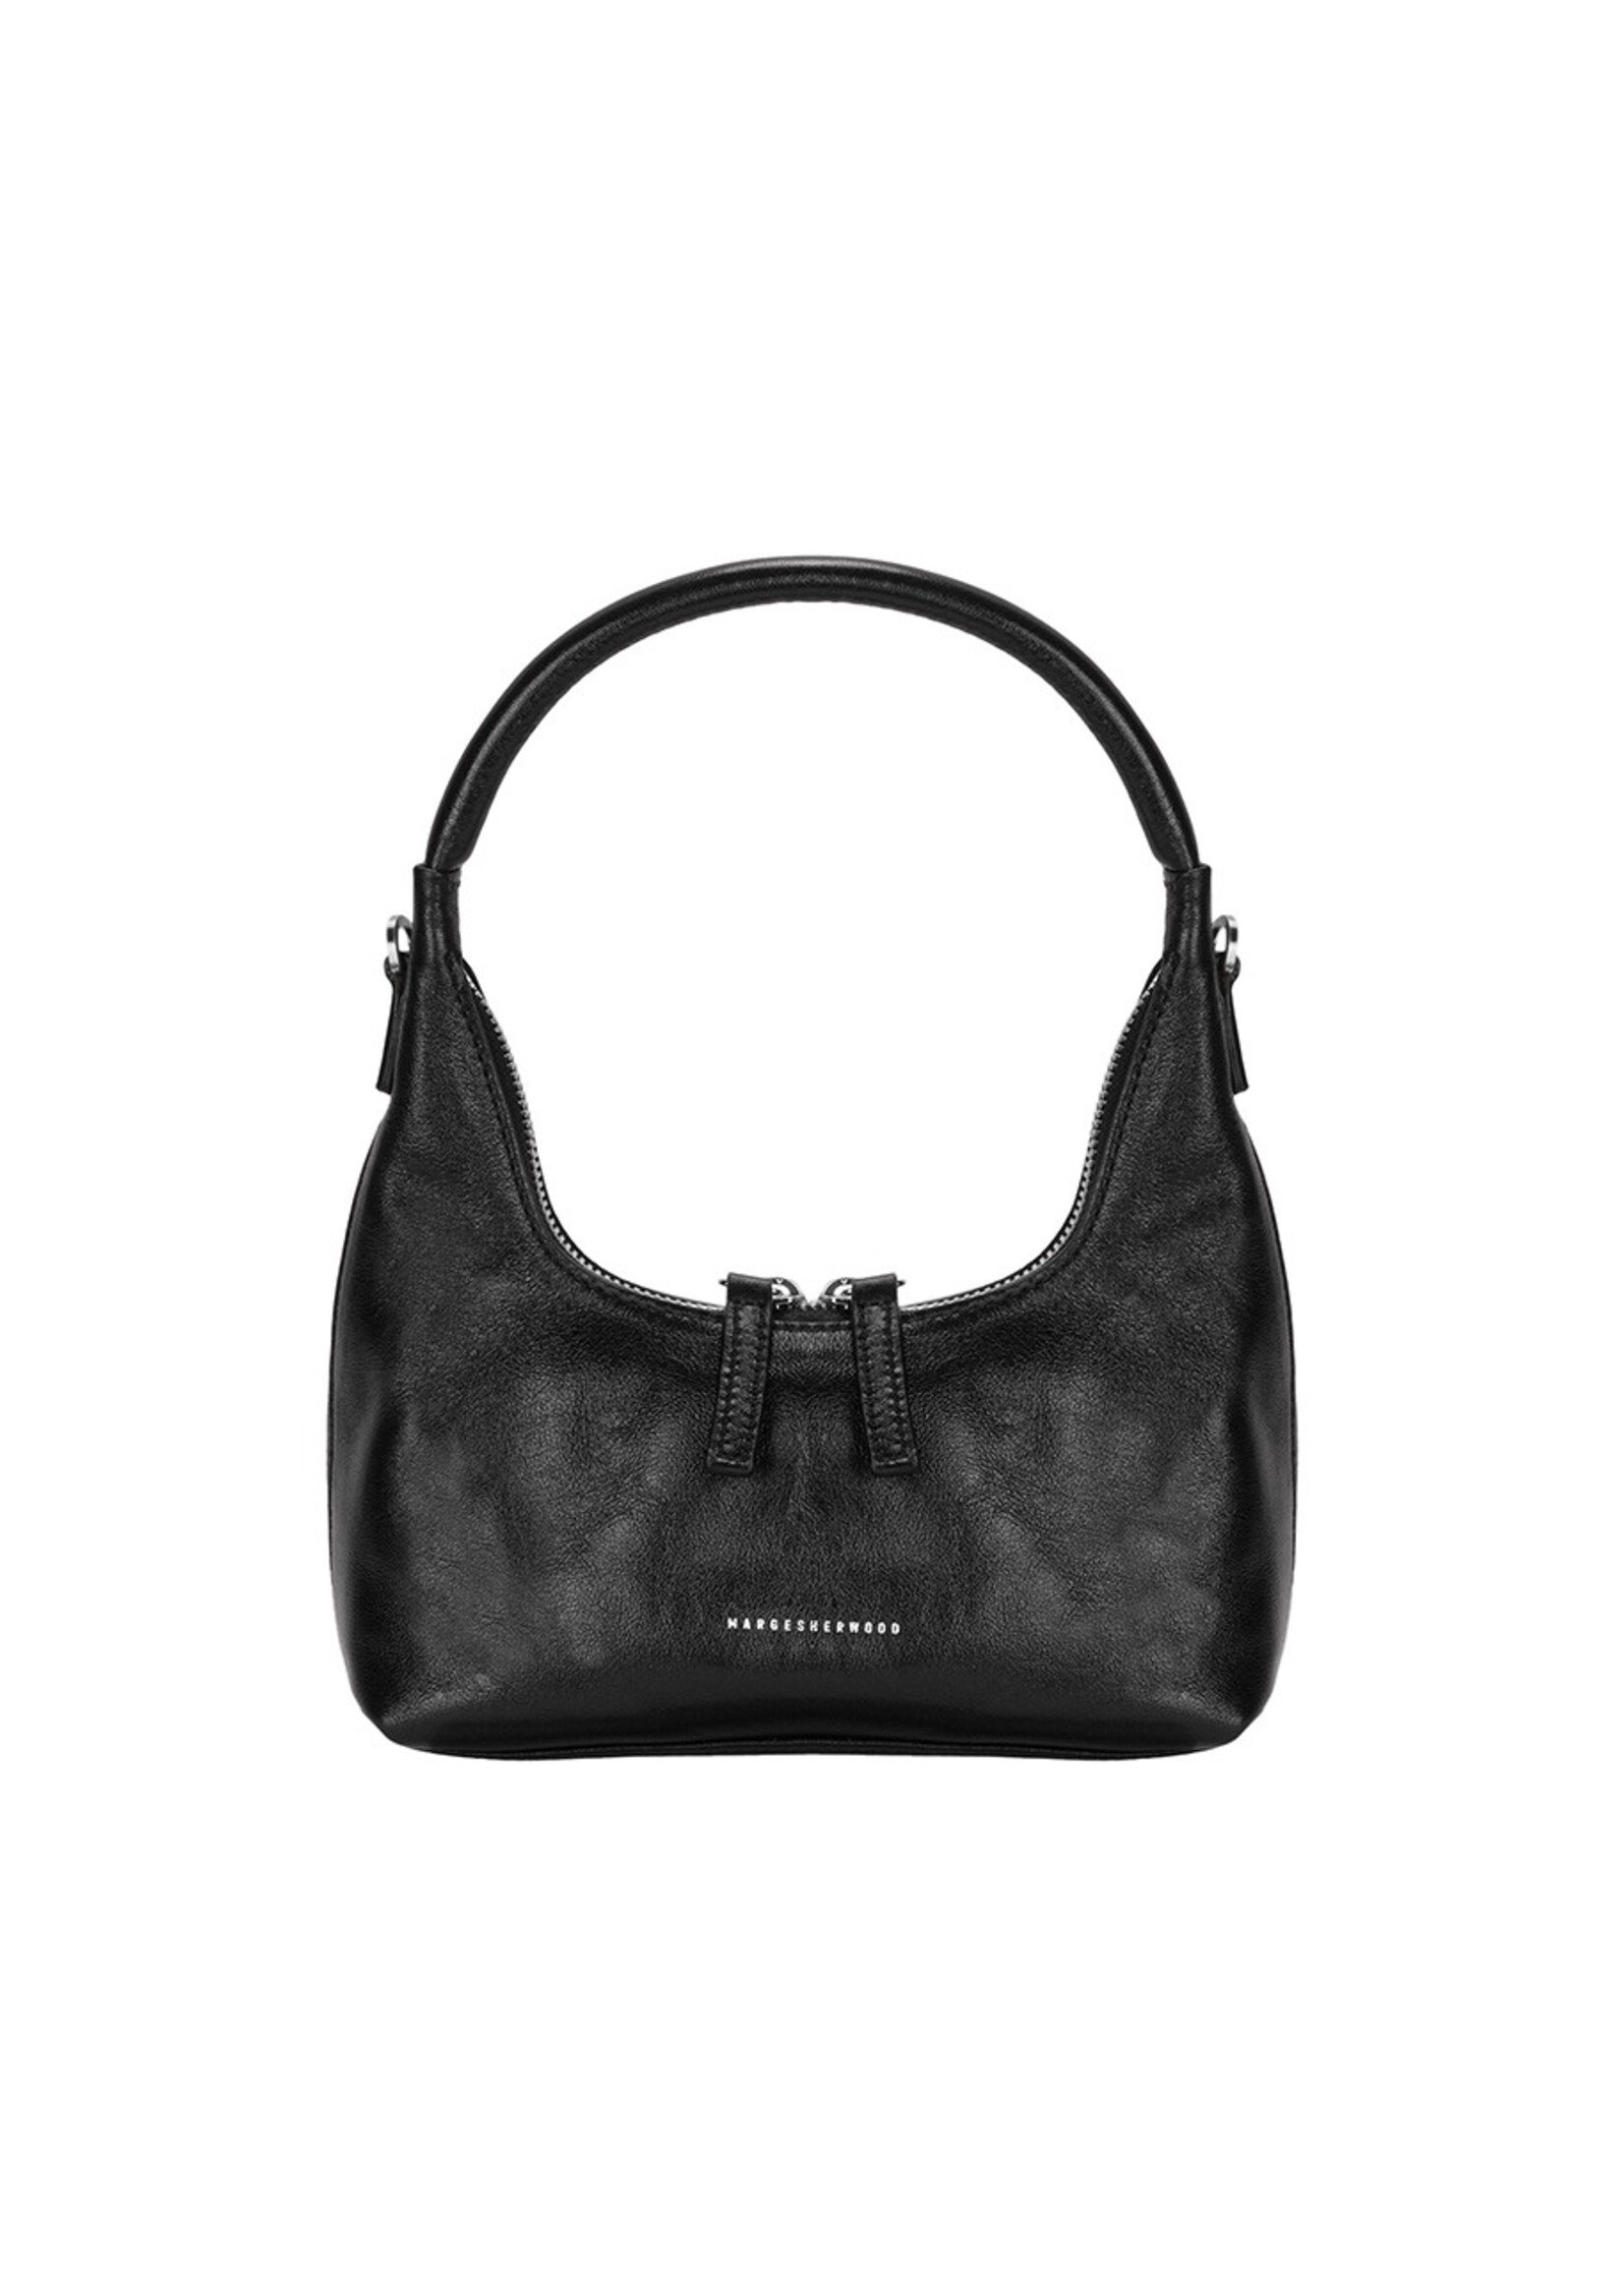 MARGE SHERWOOD Hobo Mini Bag in Glossy Black Leather